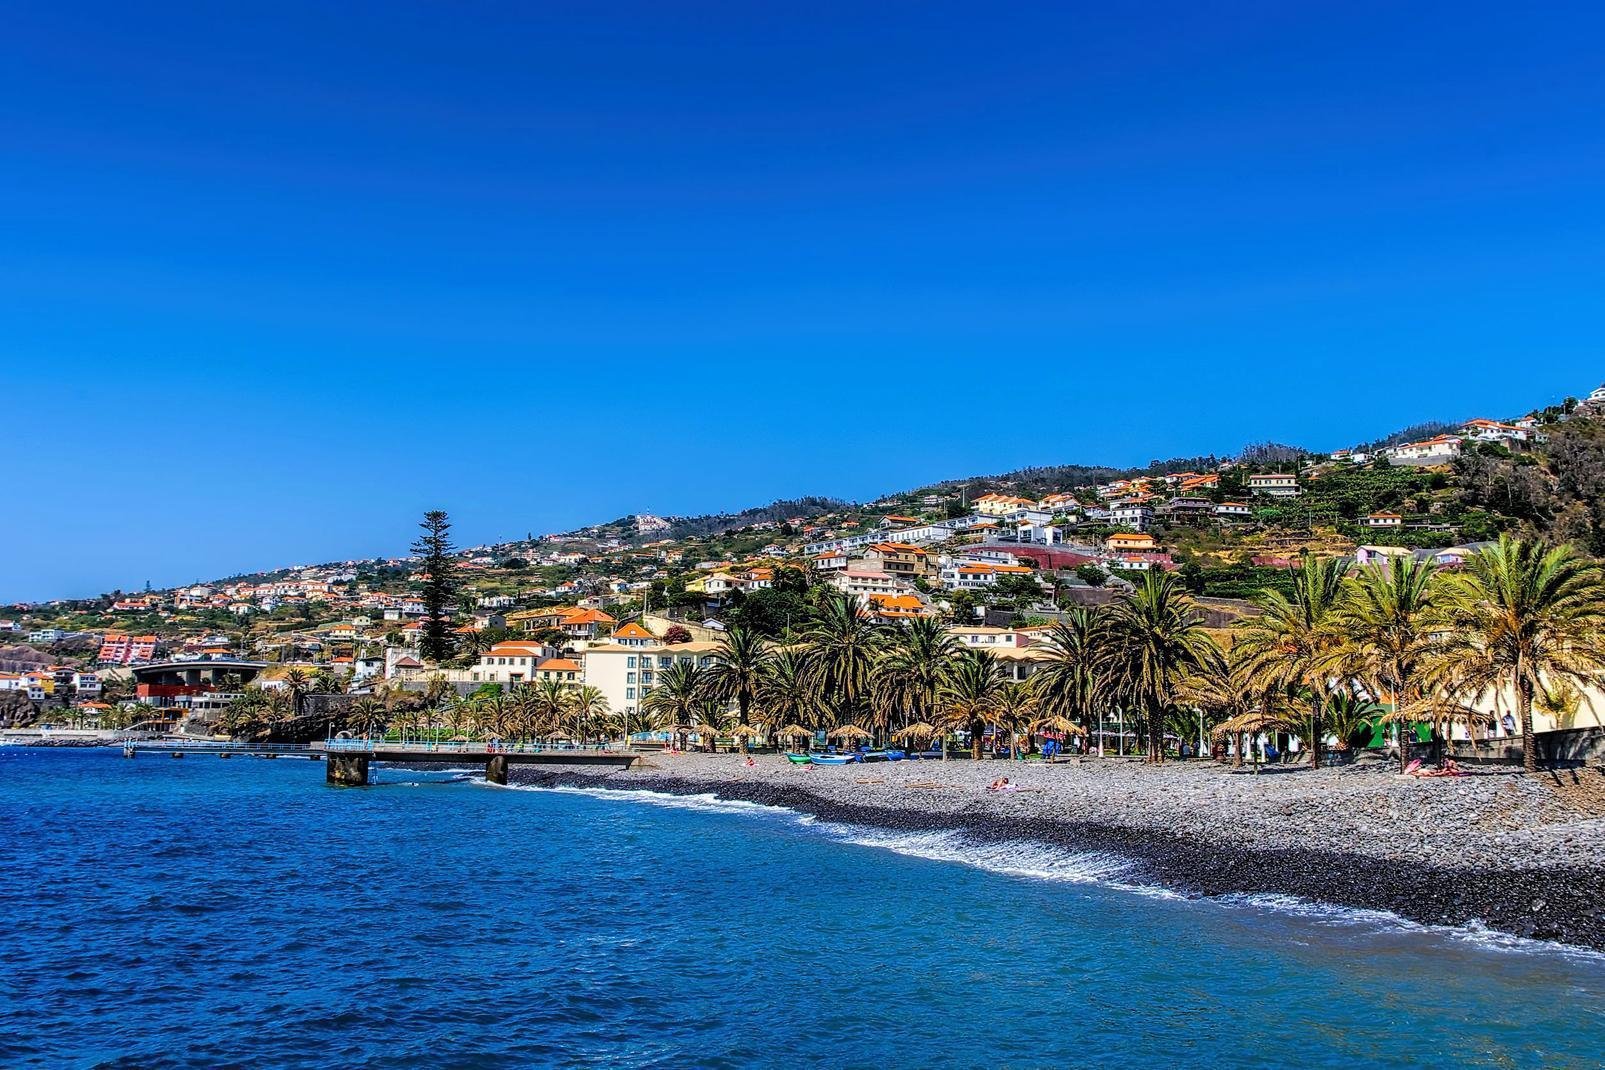 Santa Cruz es un pequeño municipio de menos de 30.000 habitantes. Situado en la costa este de la isla de Madeira, hay que recorrer unos 18 km para llegar a la capital Funchal. La ciudad es famosa sobre todo por su aeropuerto, pero también por la playa de Palmeiras. También posee dos piscinas naturales. Santa Cruz es una pequeña y bonita ciudad. Se han acondicionado varias zonas balnearias. ...